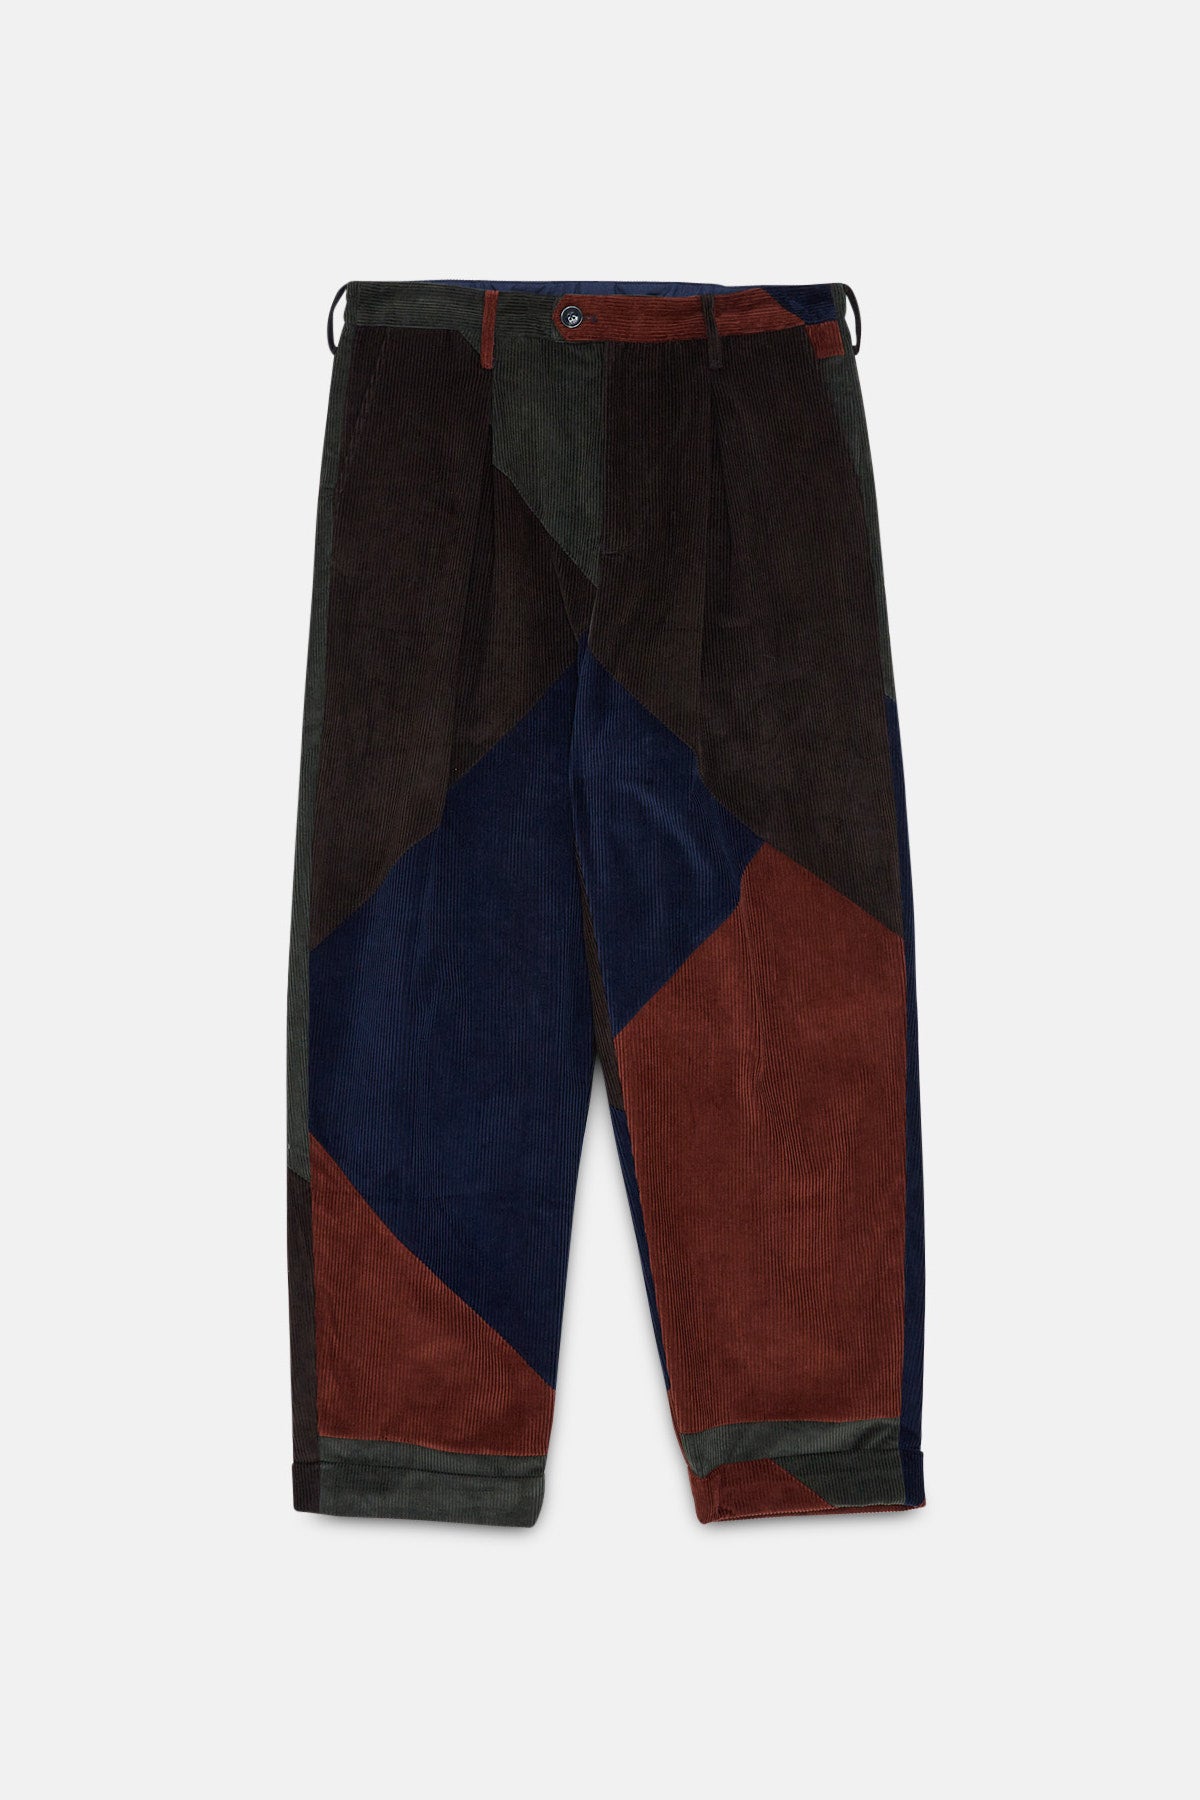 Four Climes - Bermuda Pants- Multi Color - Patchwork Corduroy